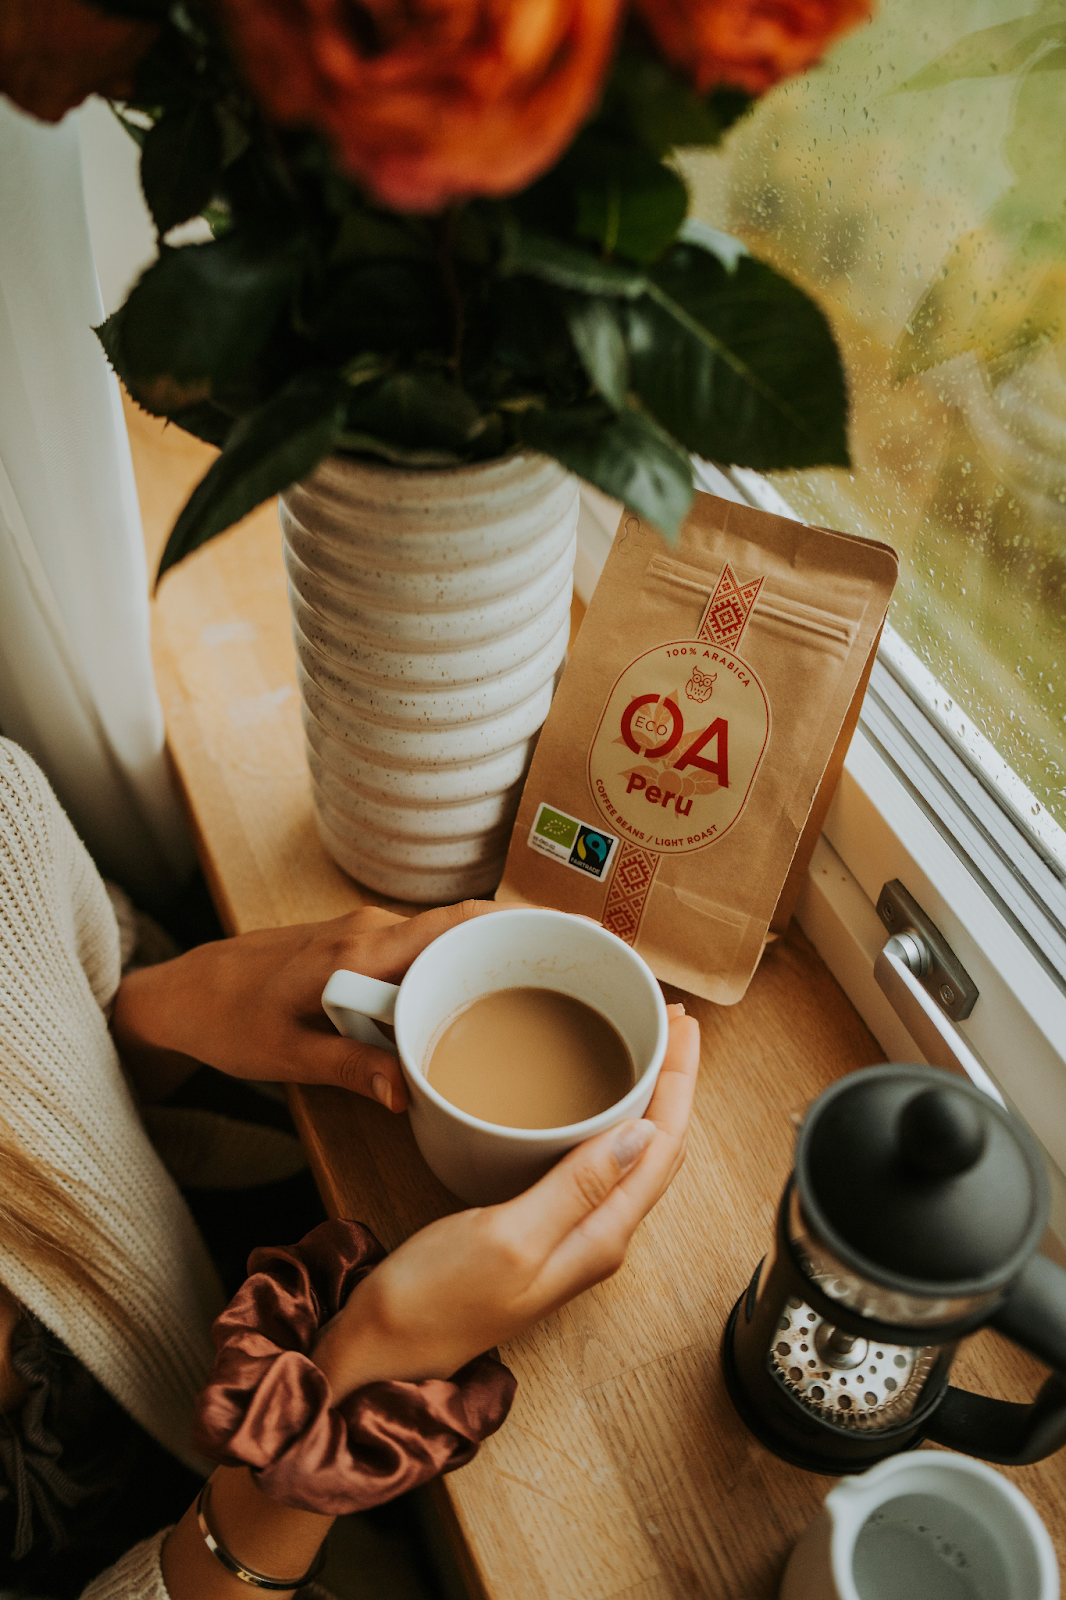 OA Peru Fairtrade kohv